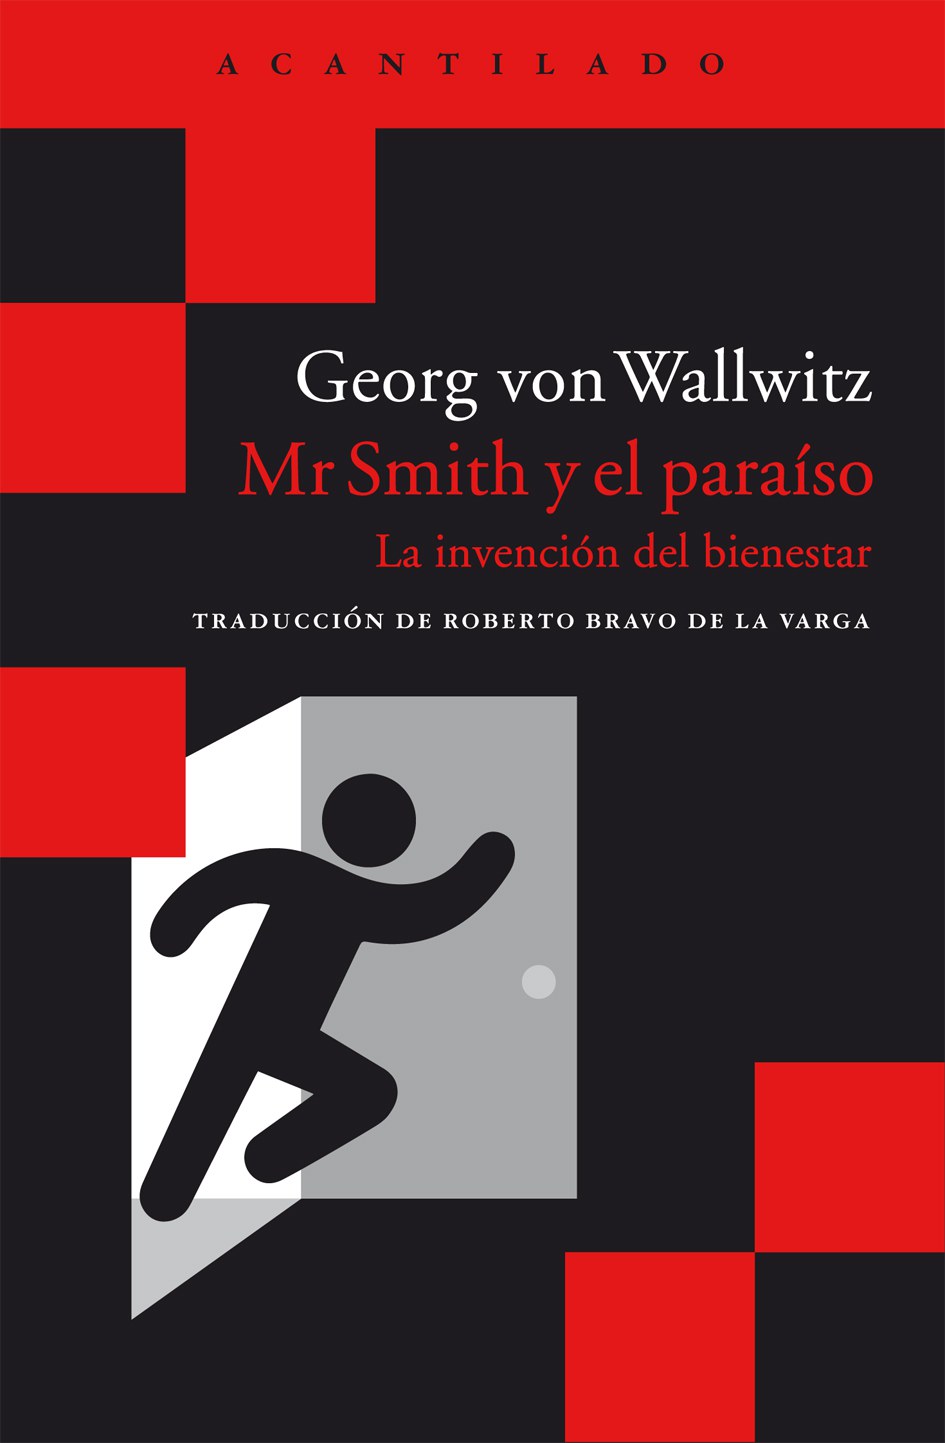 Mr Smith y el paraíso, de Georg von Wallwitz (Acantilado, 2016)